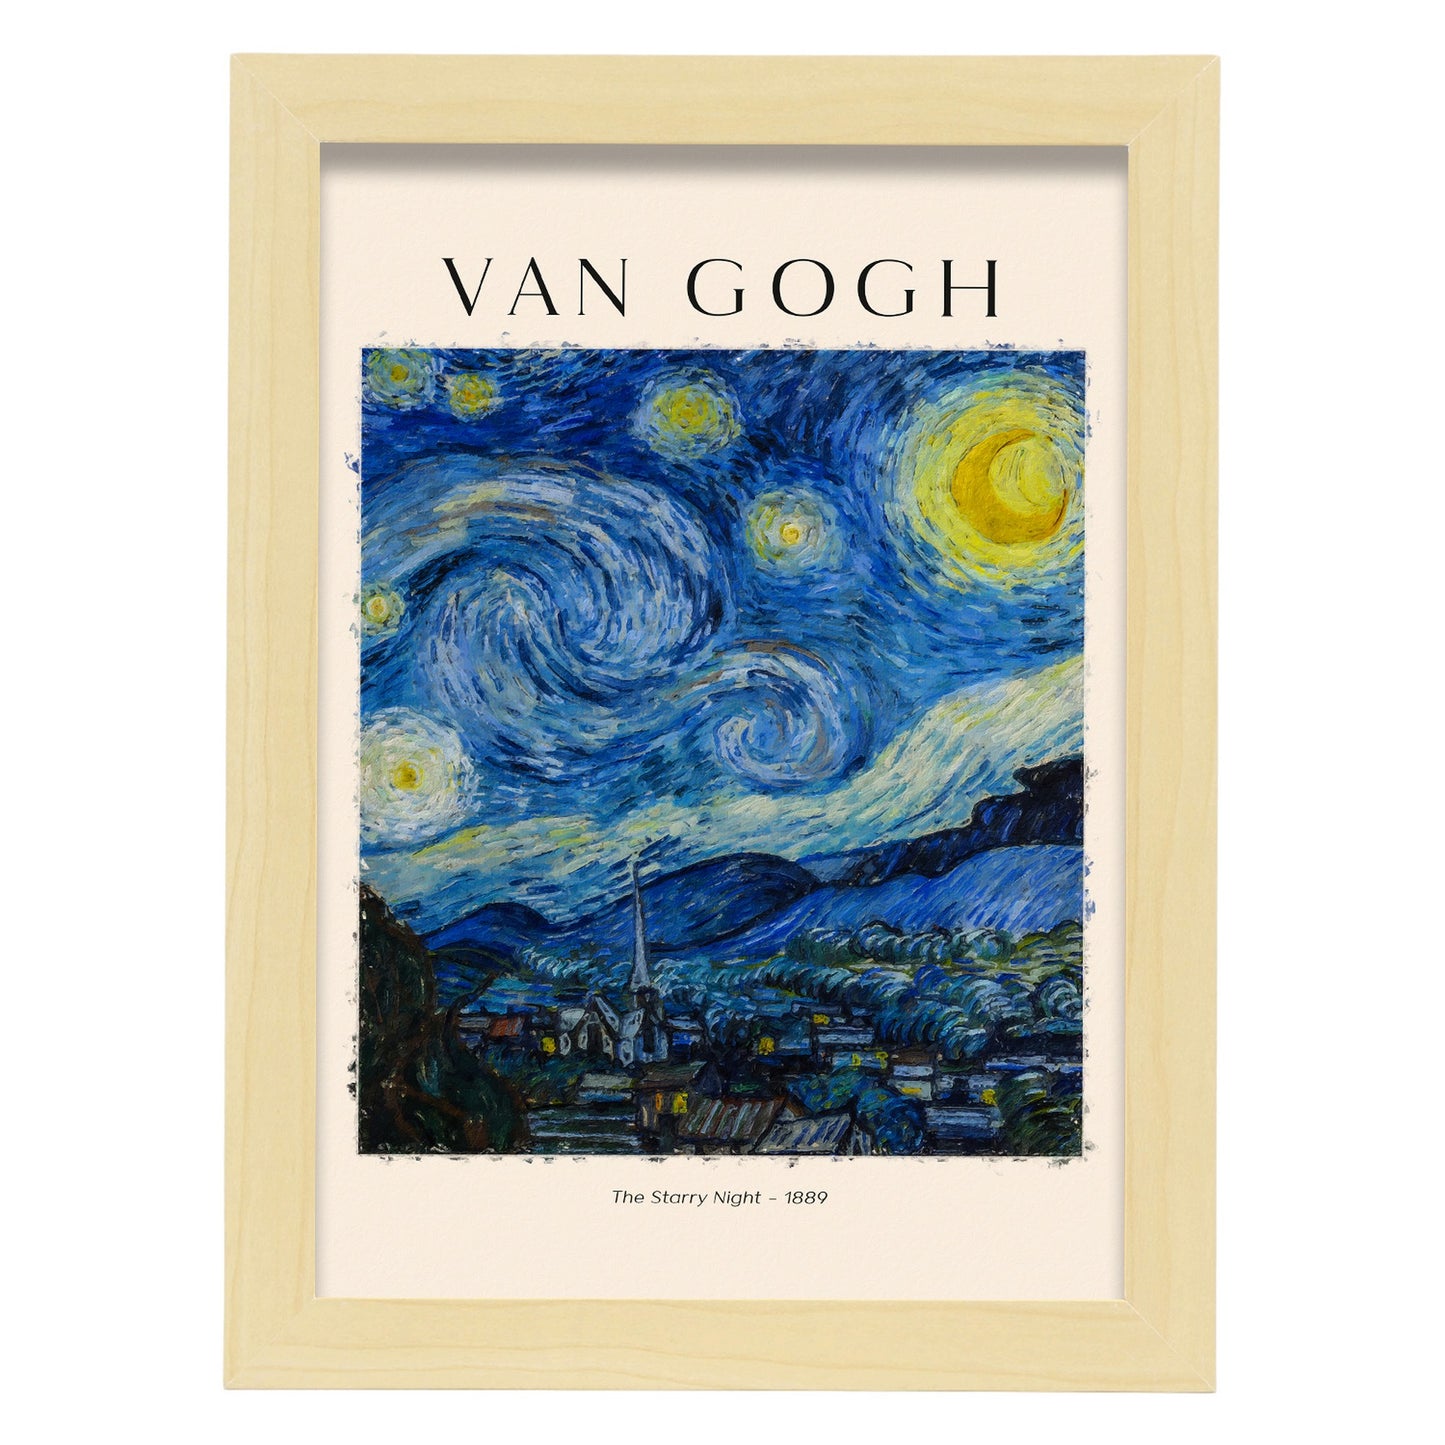 Lámina estética de Noche Estrellada inspirada en Van Gogh